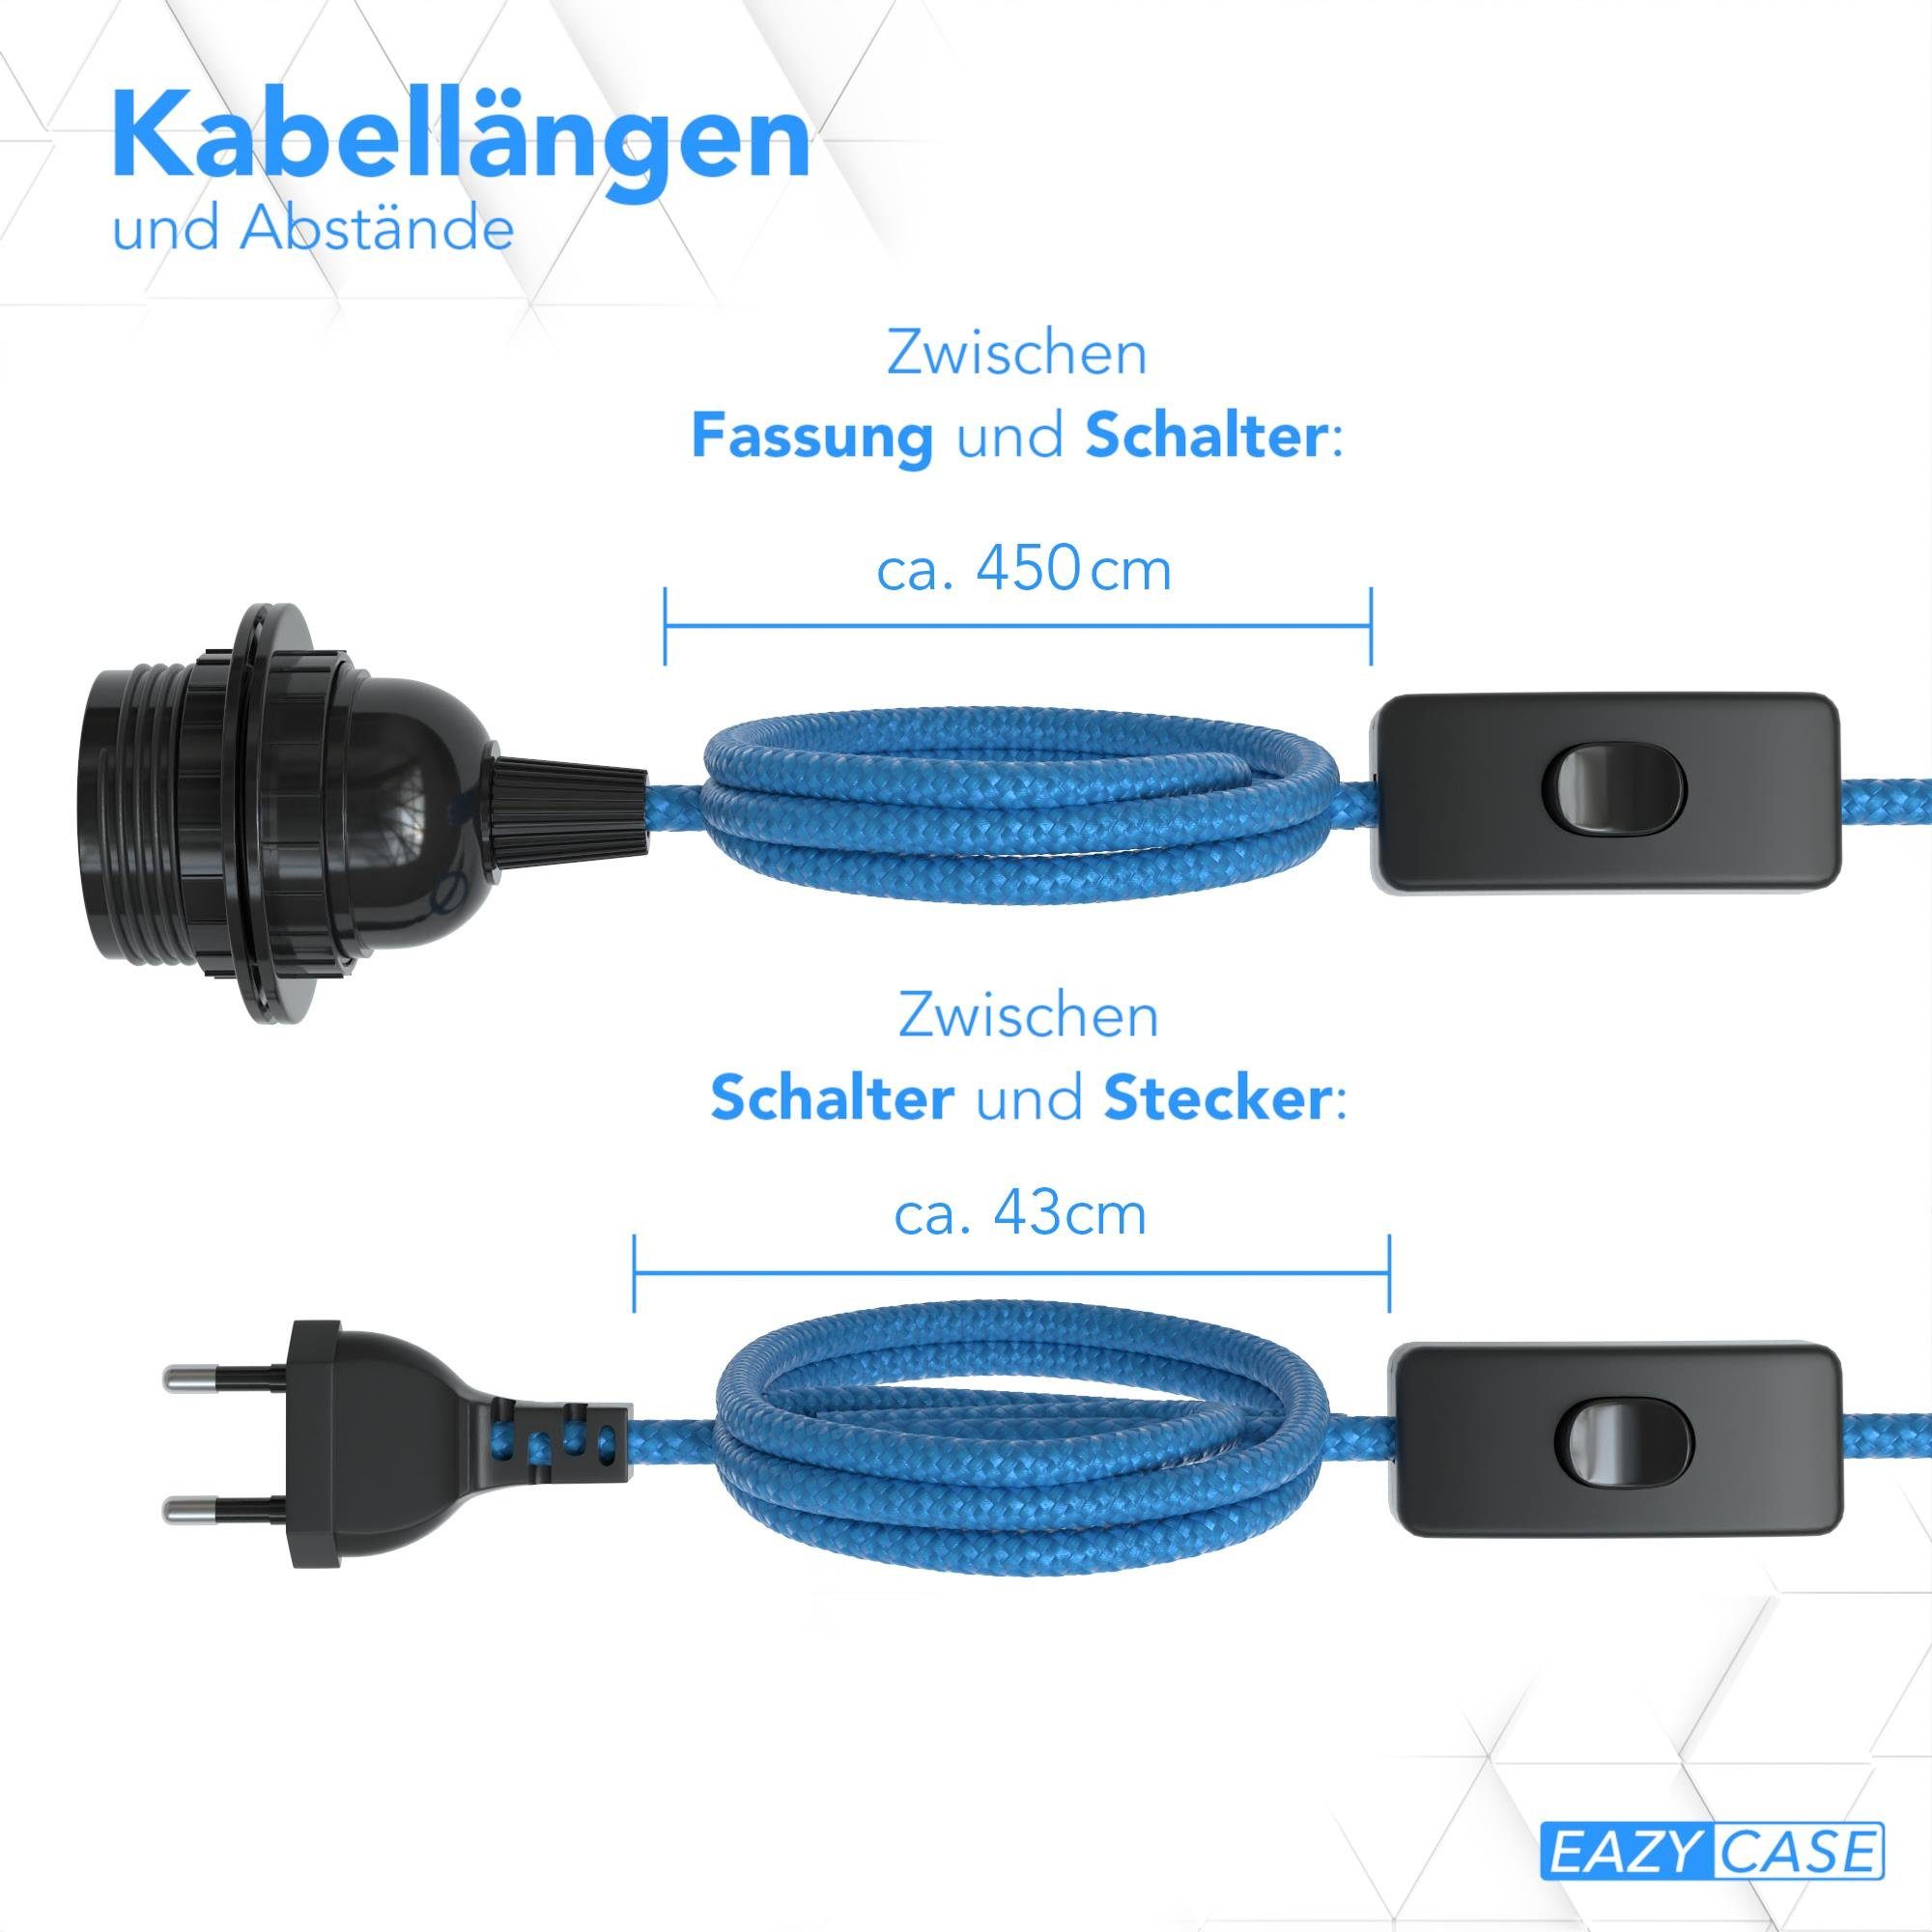 EAZY CASE E27 Lampenkabel E27 Schalter Lampenaufhängung Kabel 5m DIY für Pendelleuchten & Lampensockel Lampen, Fassung 5m Blau Lampenfassung